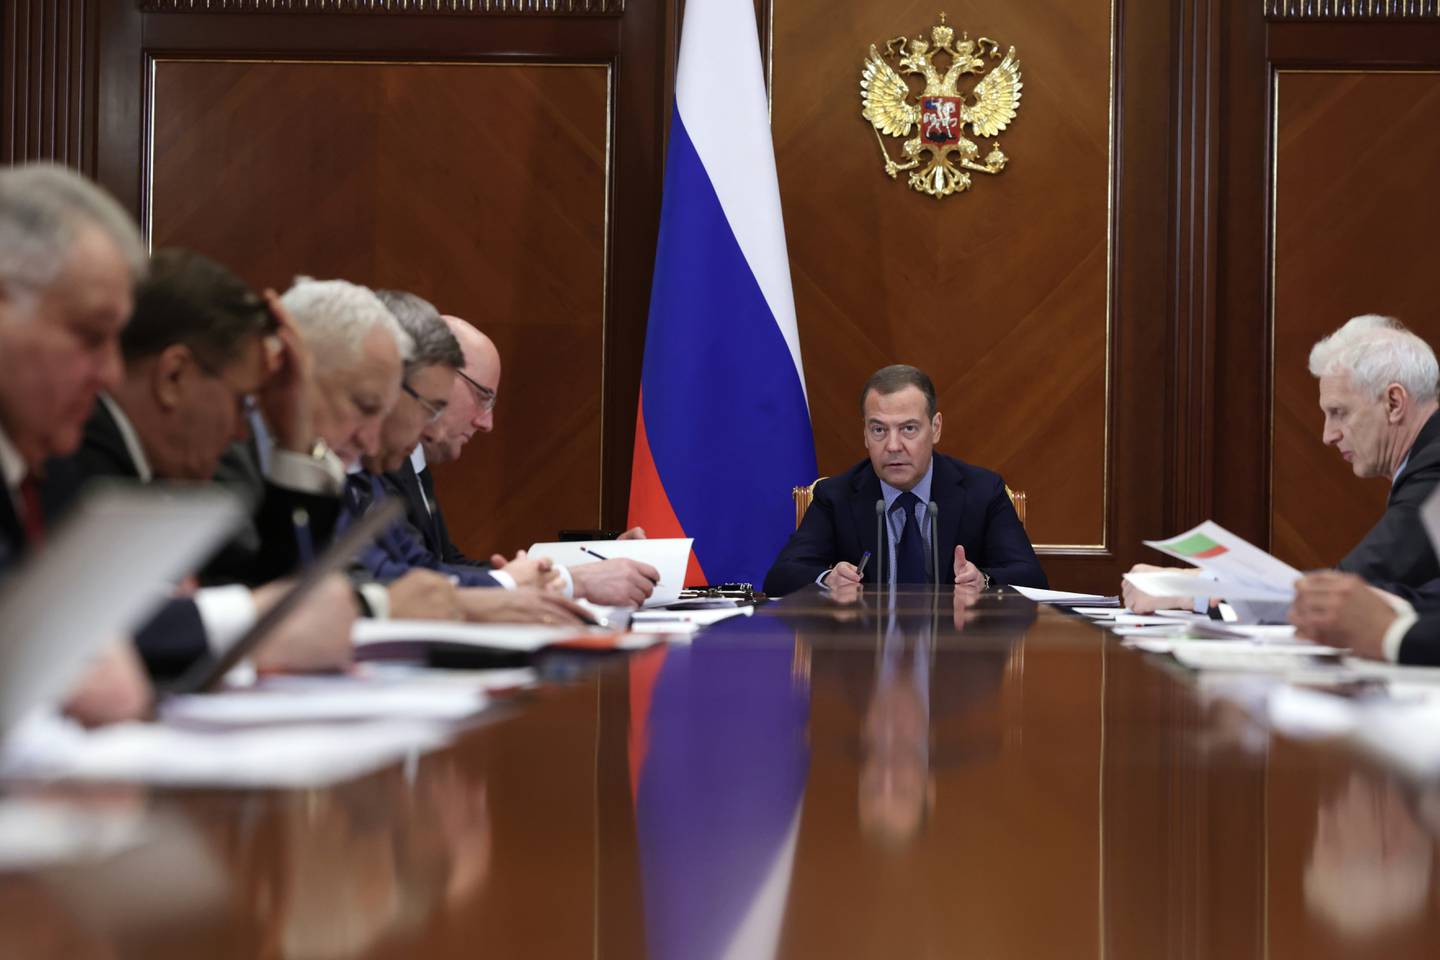 Der frühere russische Präsident Dmitri Medwedew, der am Freitag bei einem Treffen gesehen wurde, hat nukleare Abschreckung nicht ausgeschlossen.  AP-Foto